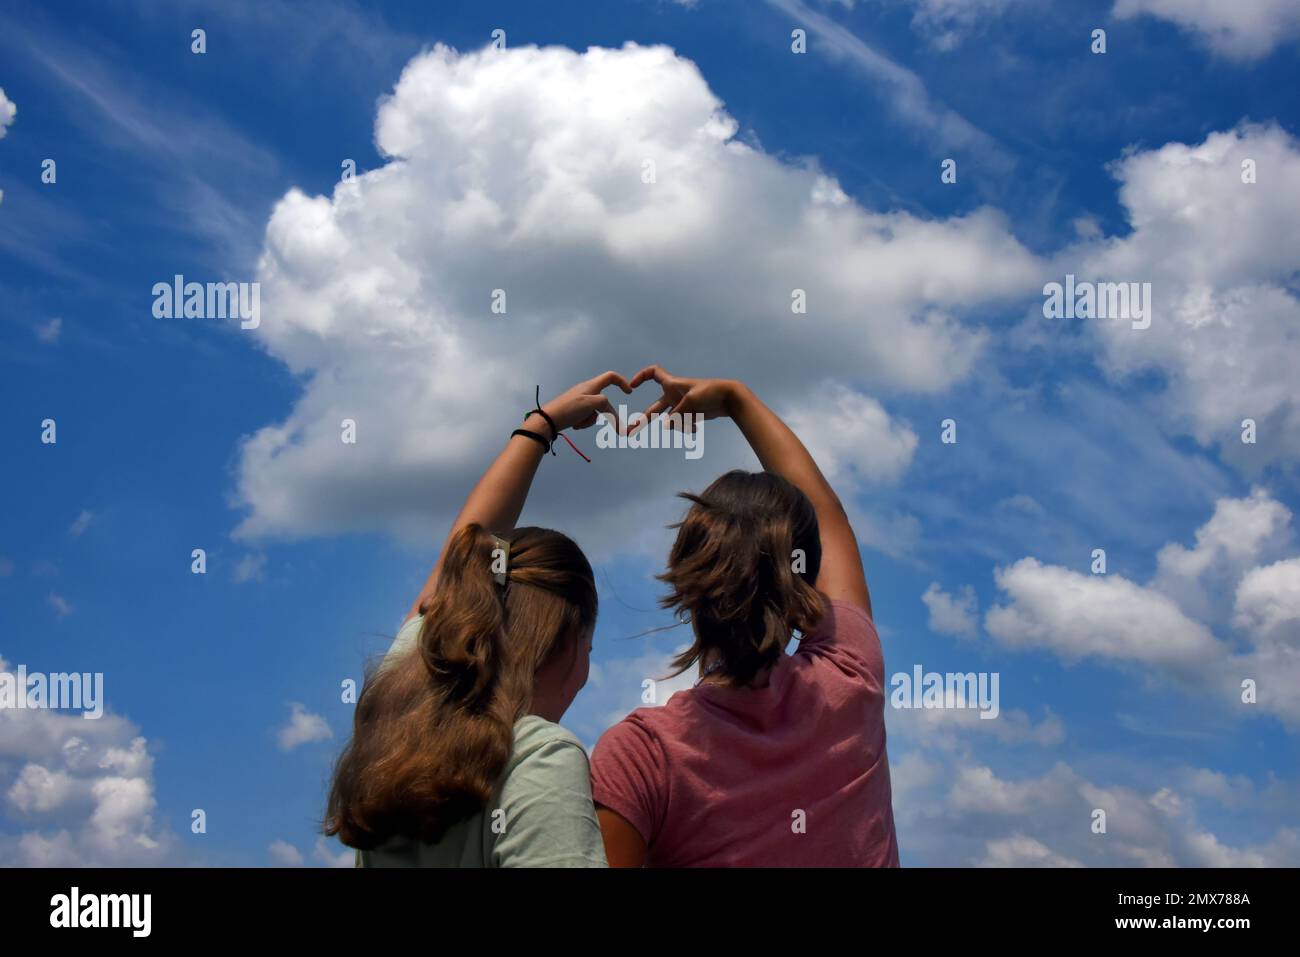 Dos hermanas, adolescentes, unen sus manos para formar un corazón. Ellos están expresando su amor por la naturaleza y el cielo, por los cielos, o por cada otro Foto de stock